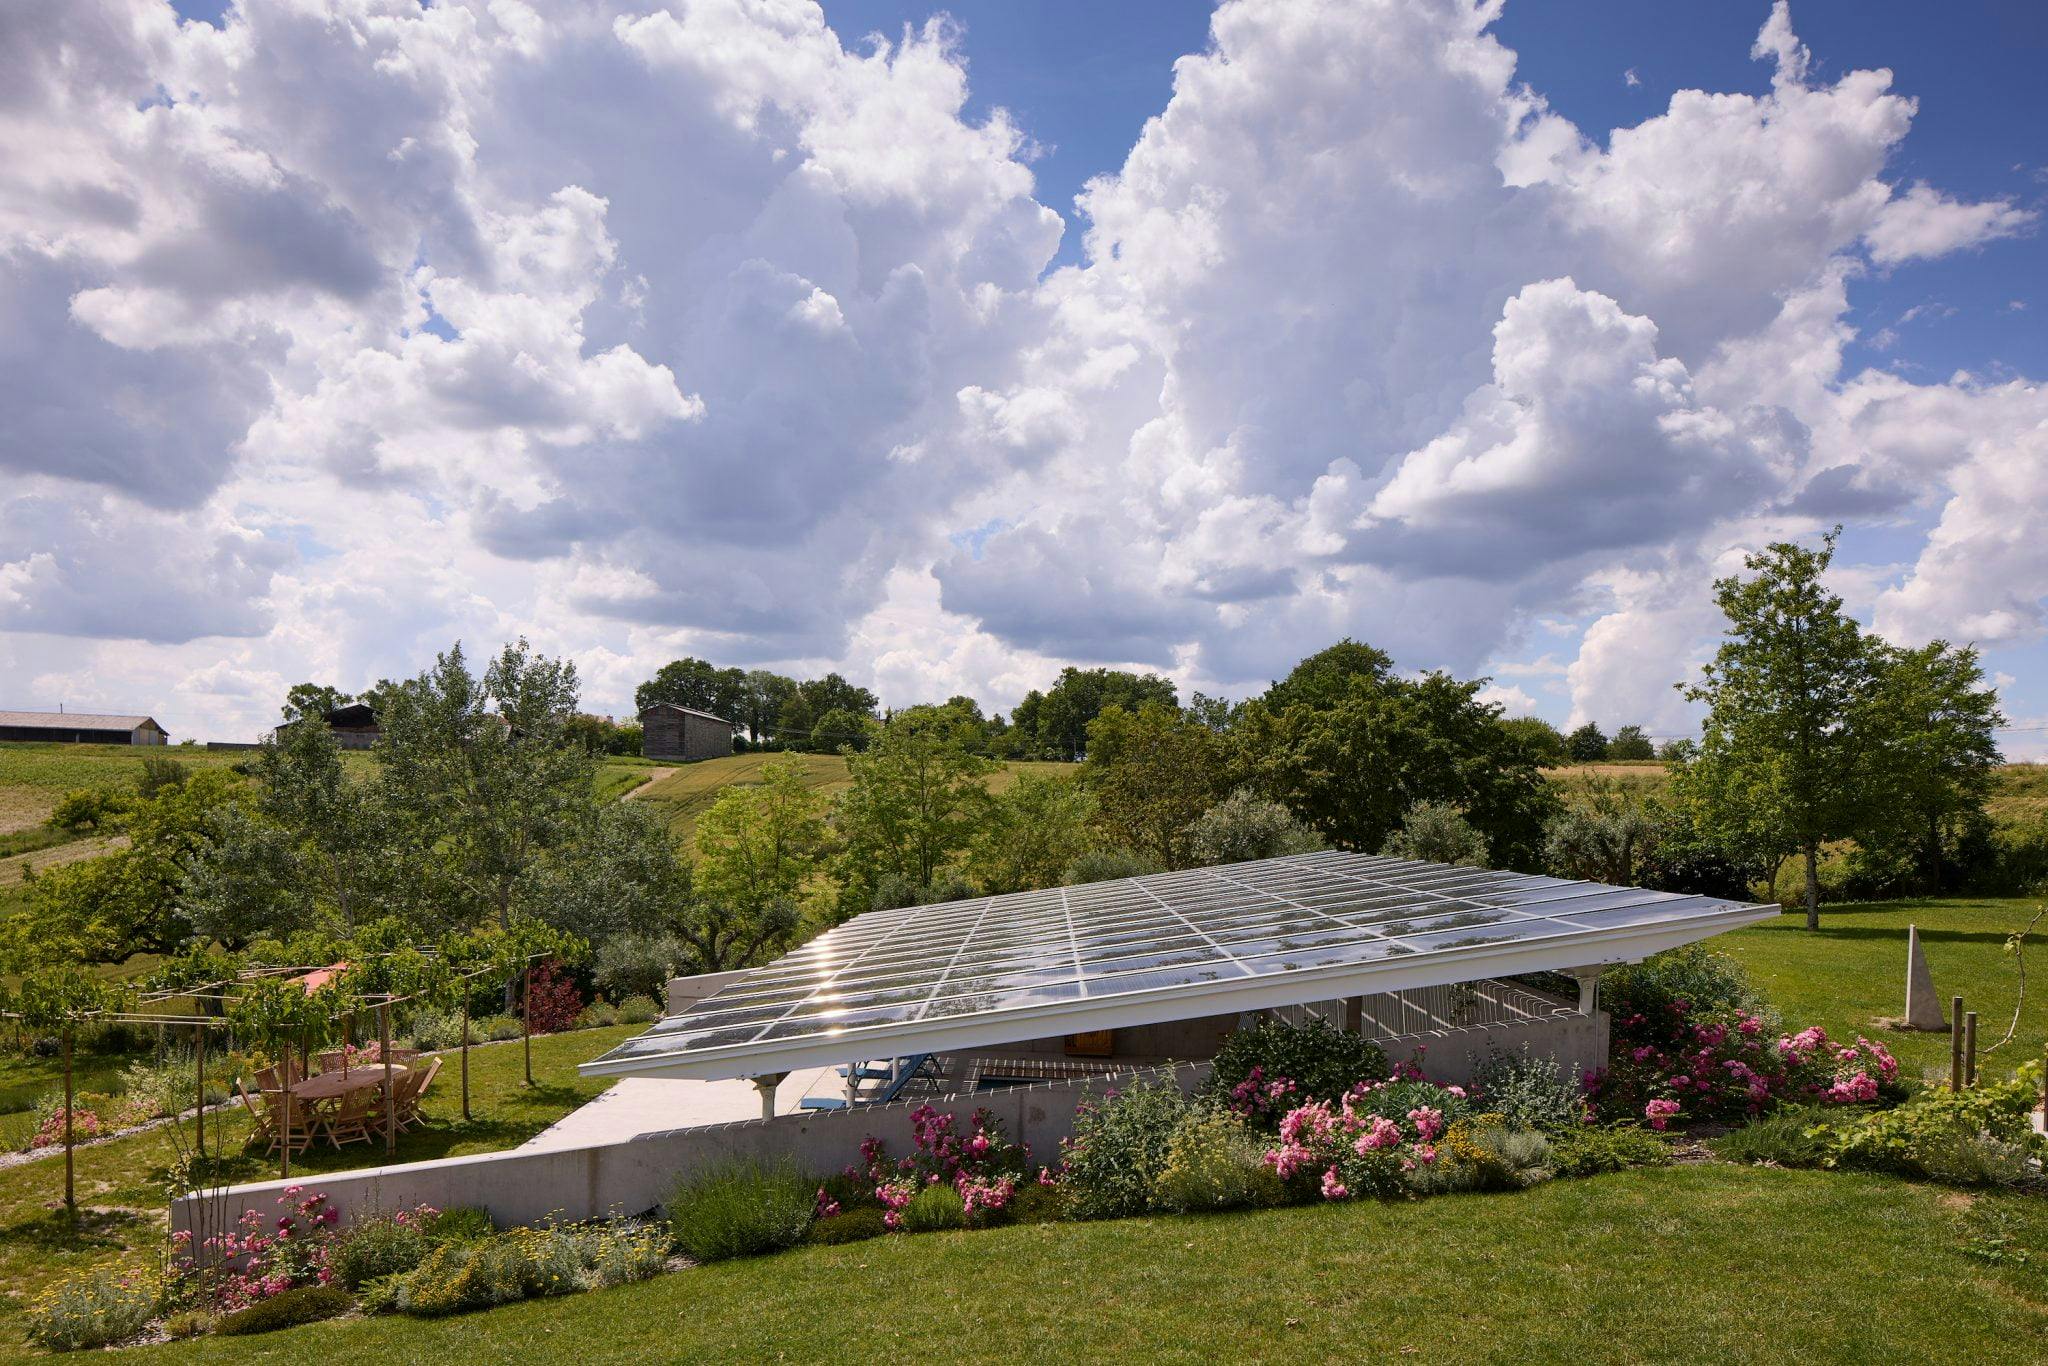 Vue sur le auvent de la piscine constitué de panneaux solaires, le jardin autour